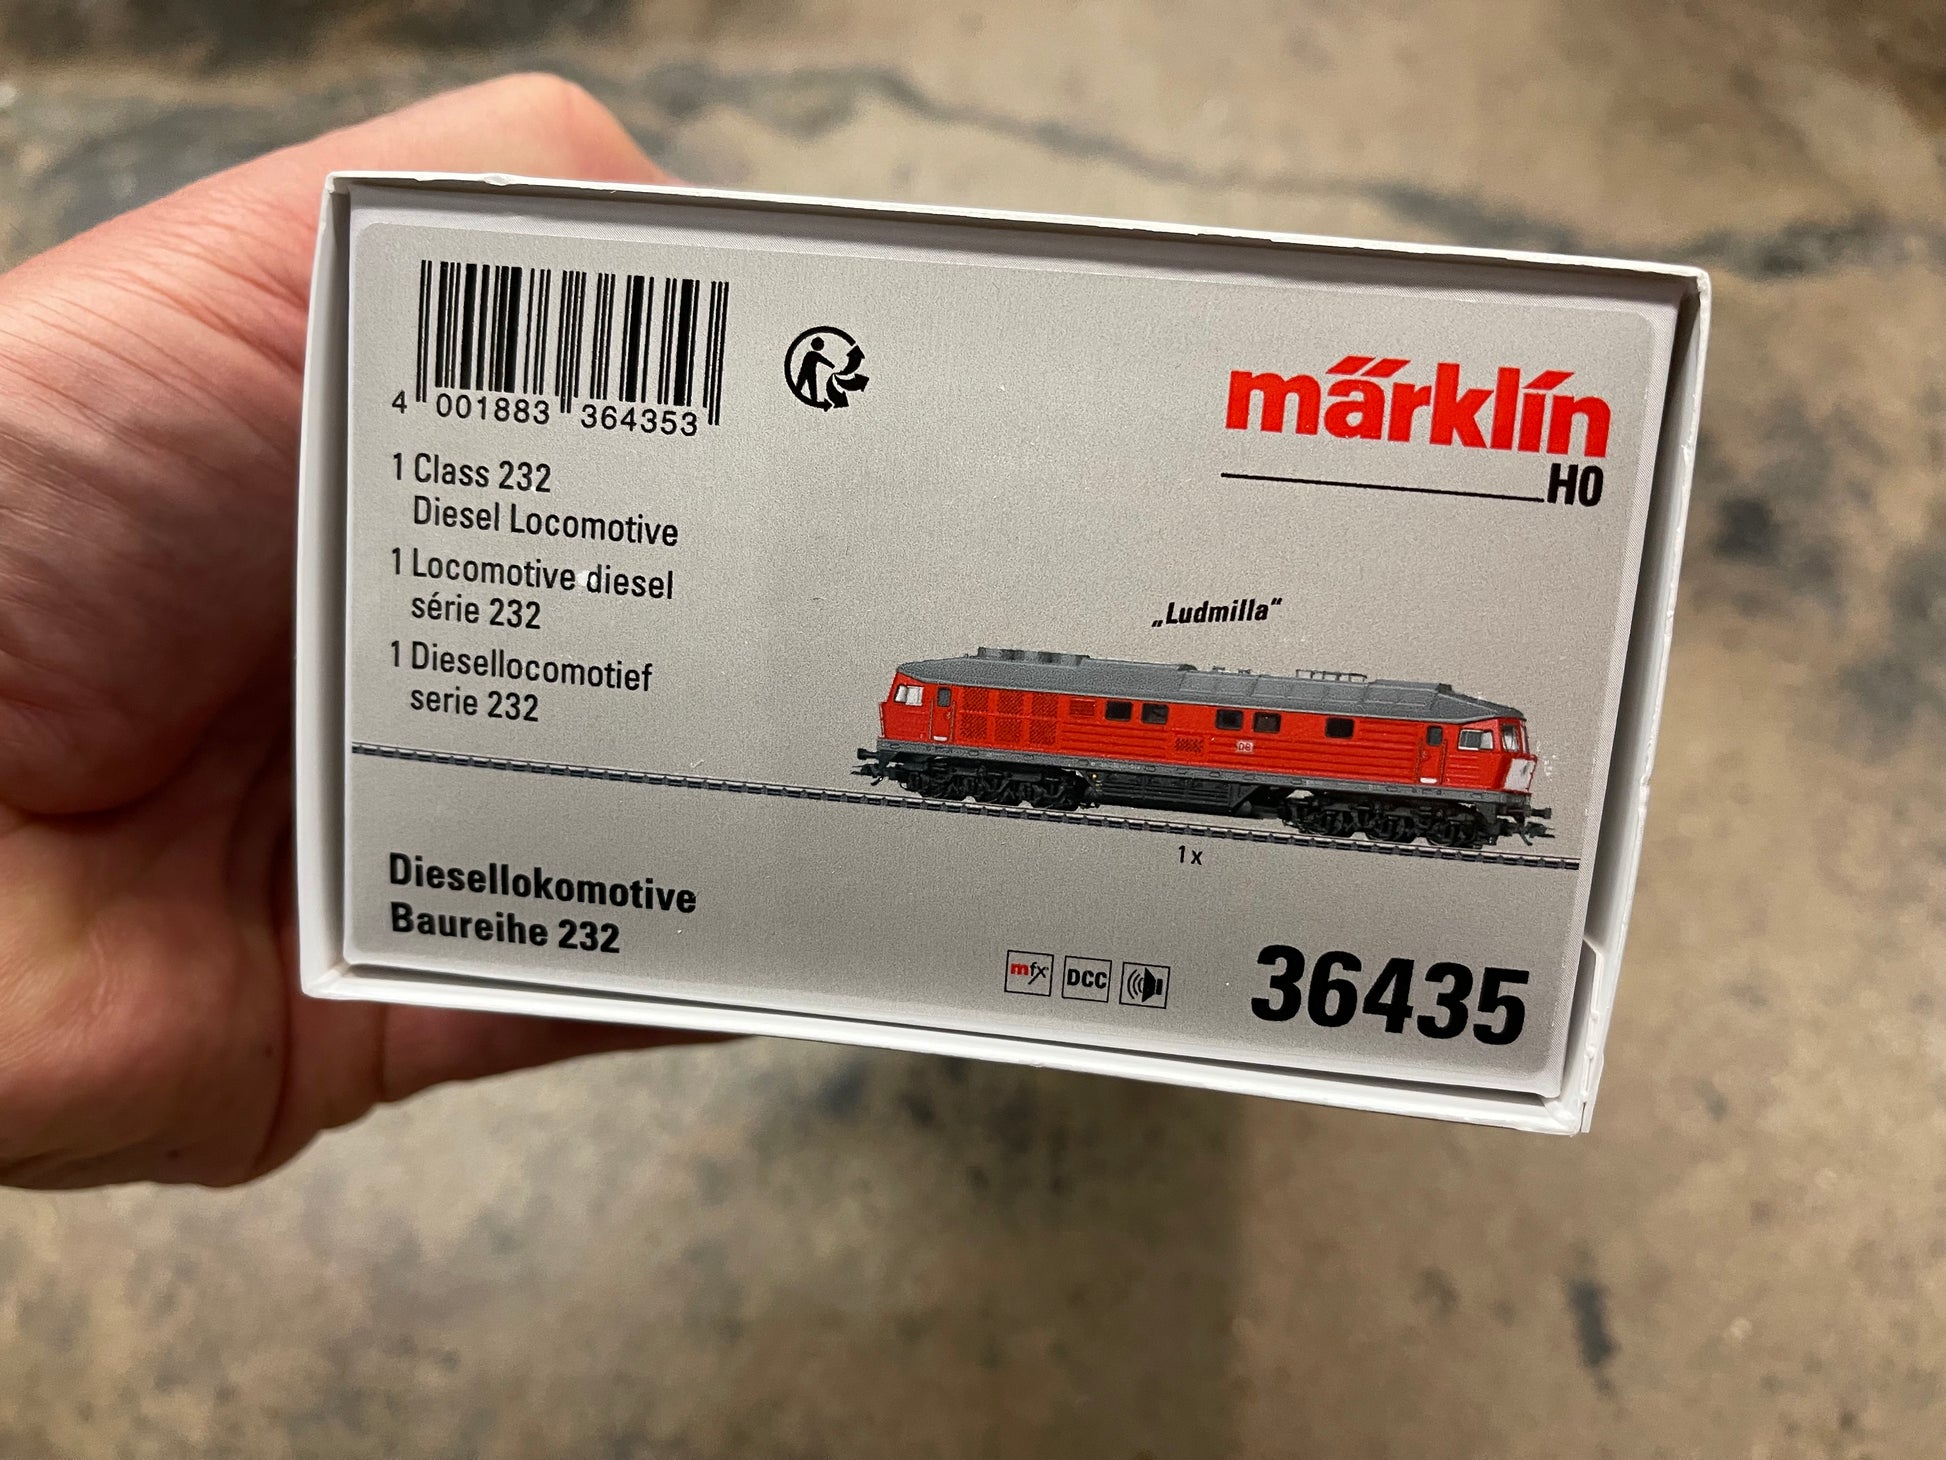 Marklin 36435 - Class 232 Diesel Locomotive at Ajckids.com